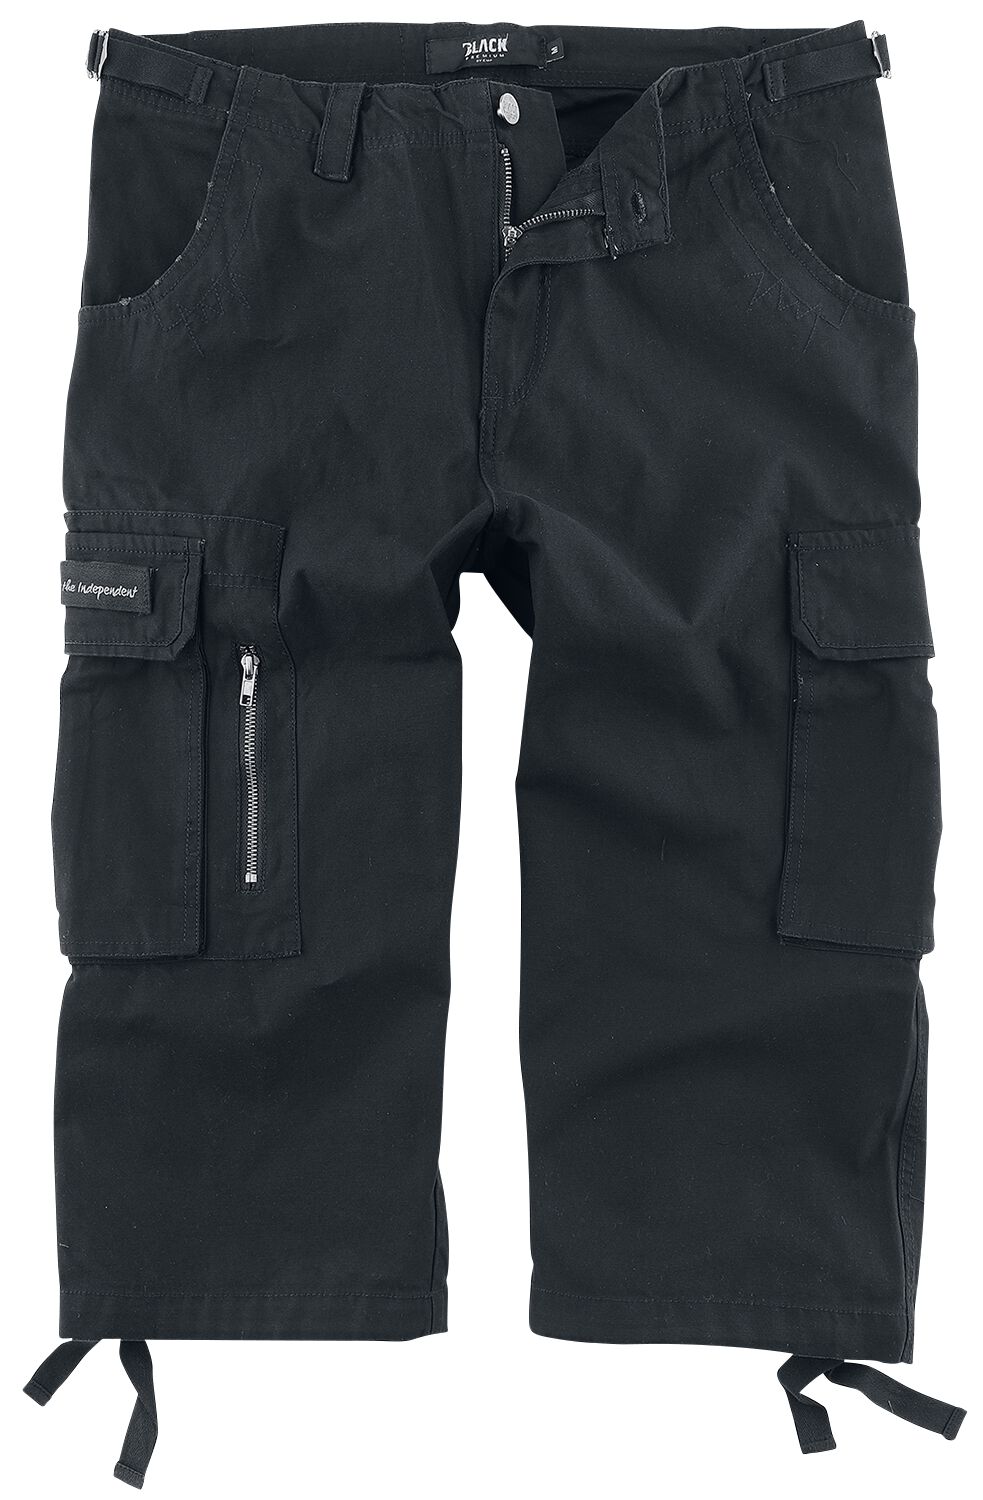 Black Premium by EMP 3/4 Army Vintage Shorts Short schwarz in 3XL